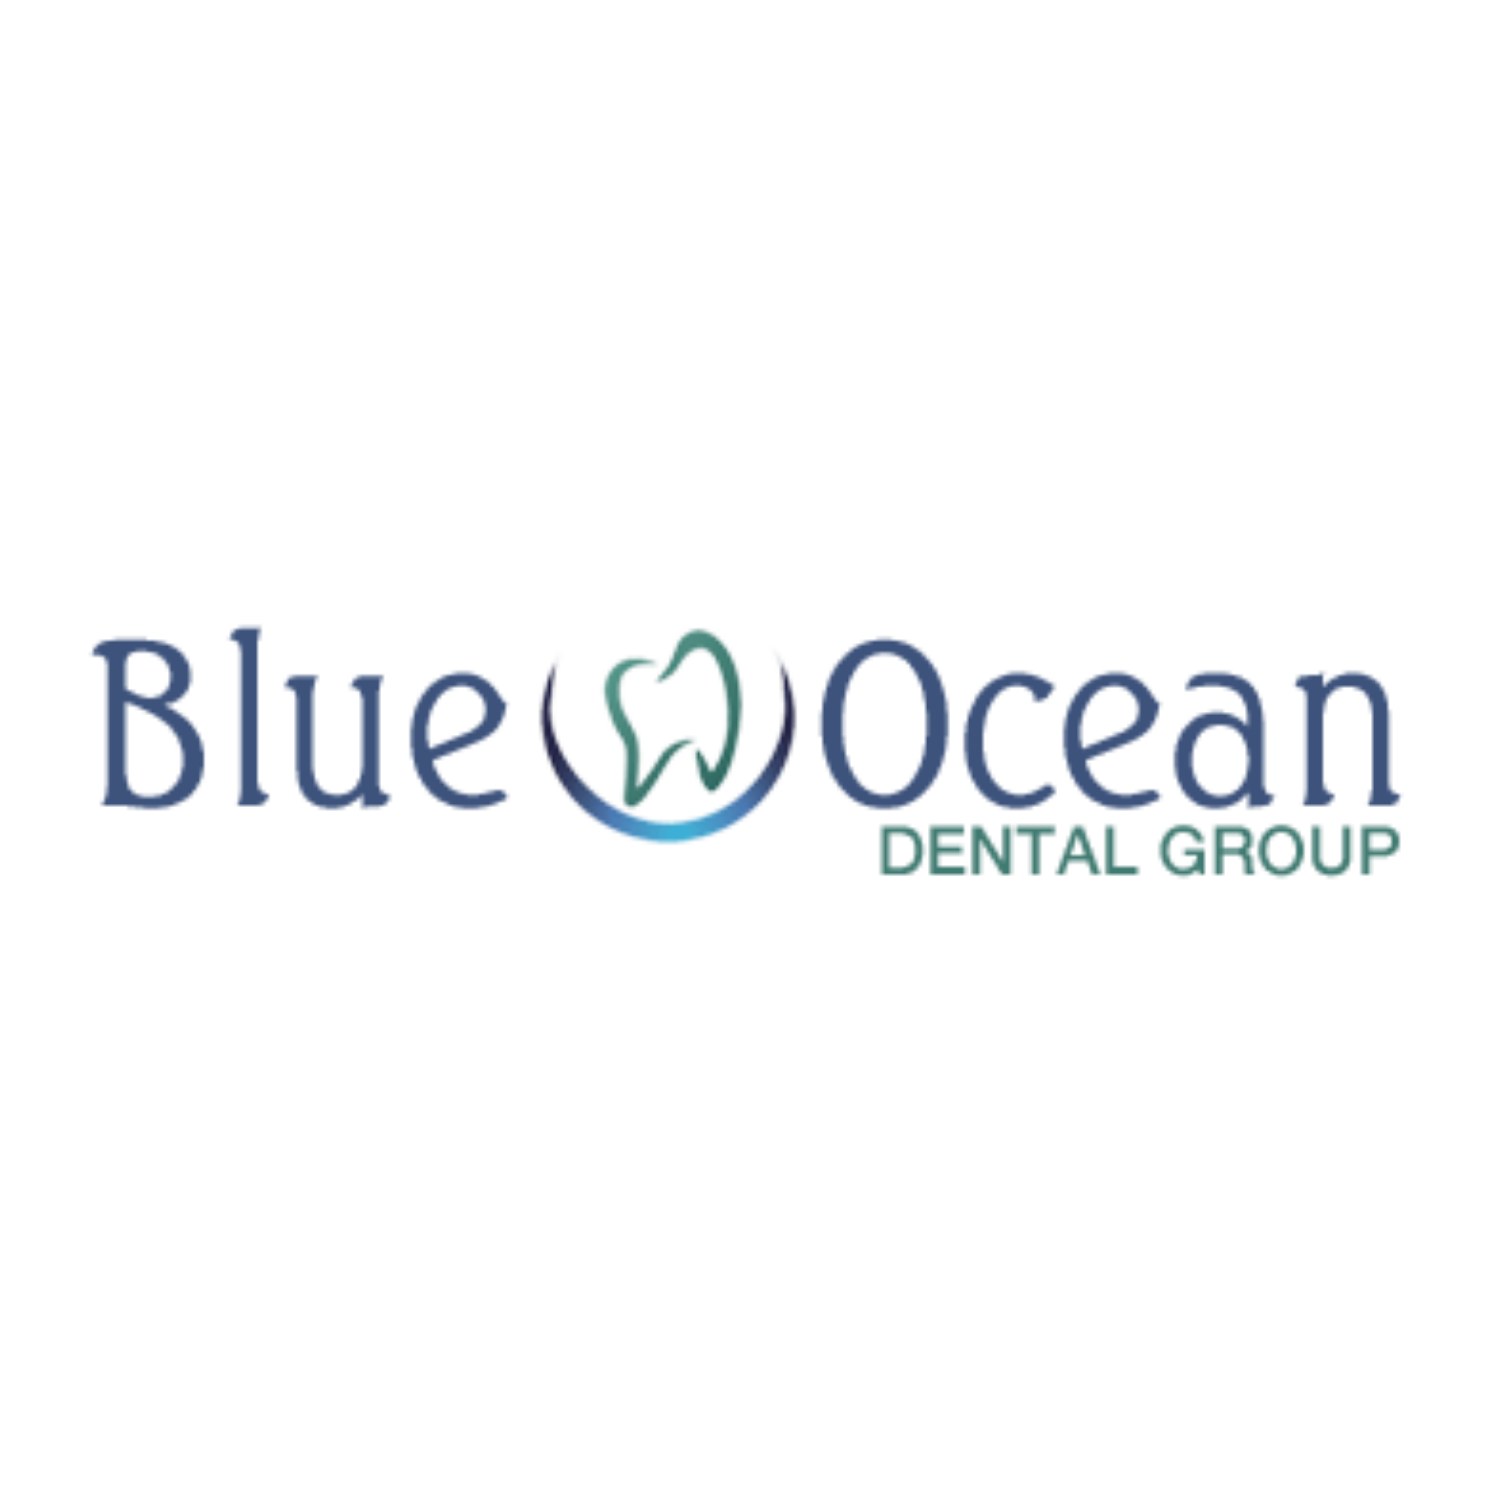 blue ocean dental group logo no background